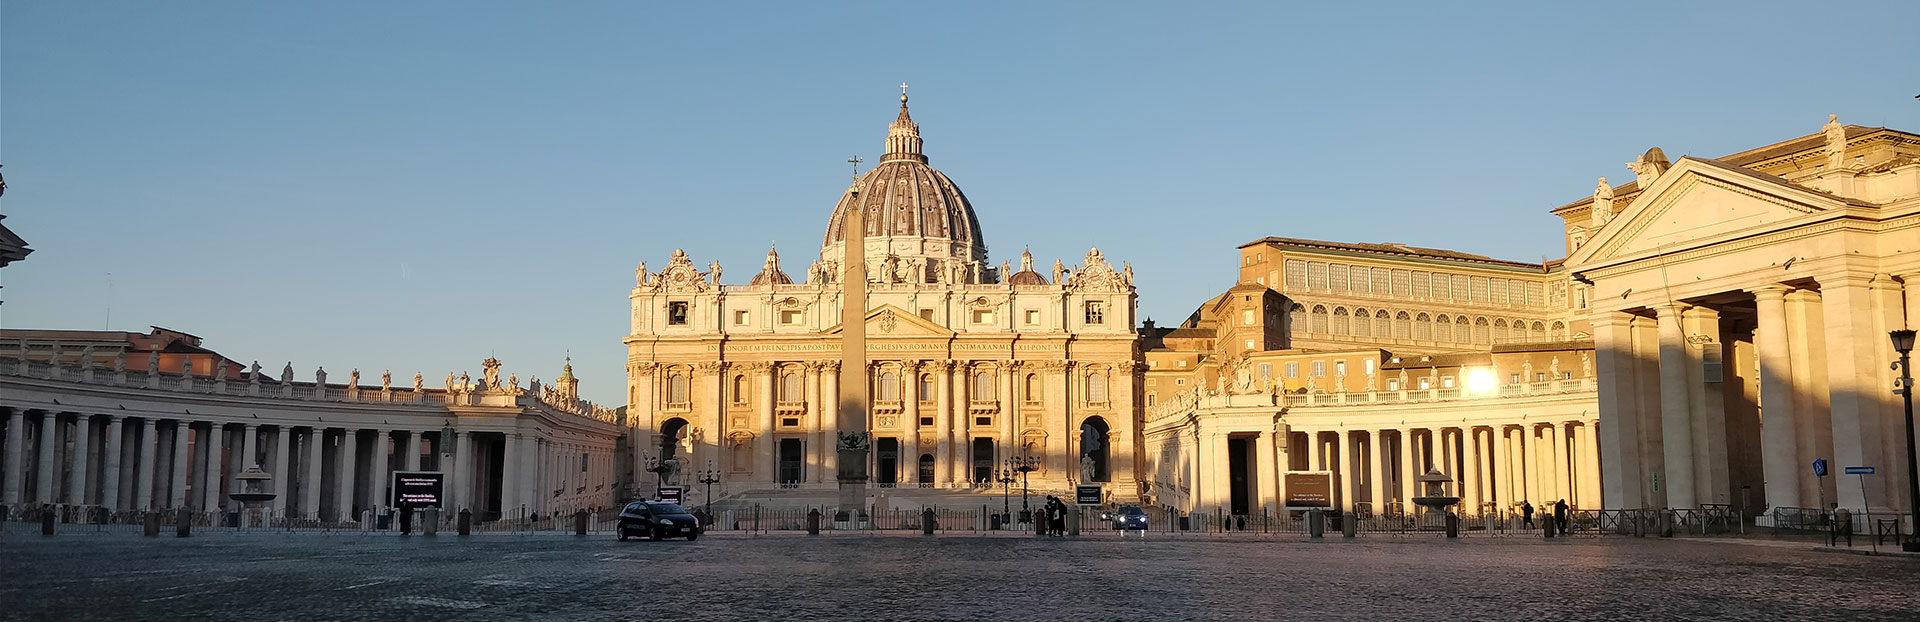 Papa Francesco propone una catechesi sul discernimento ignaziano